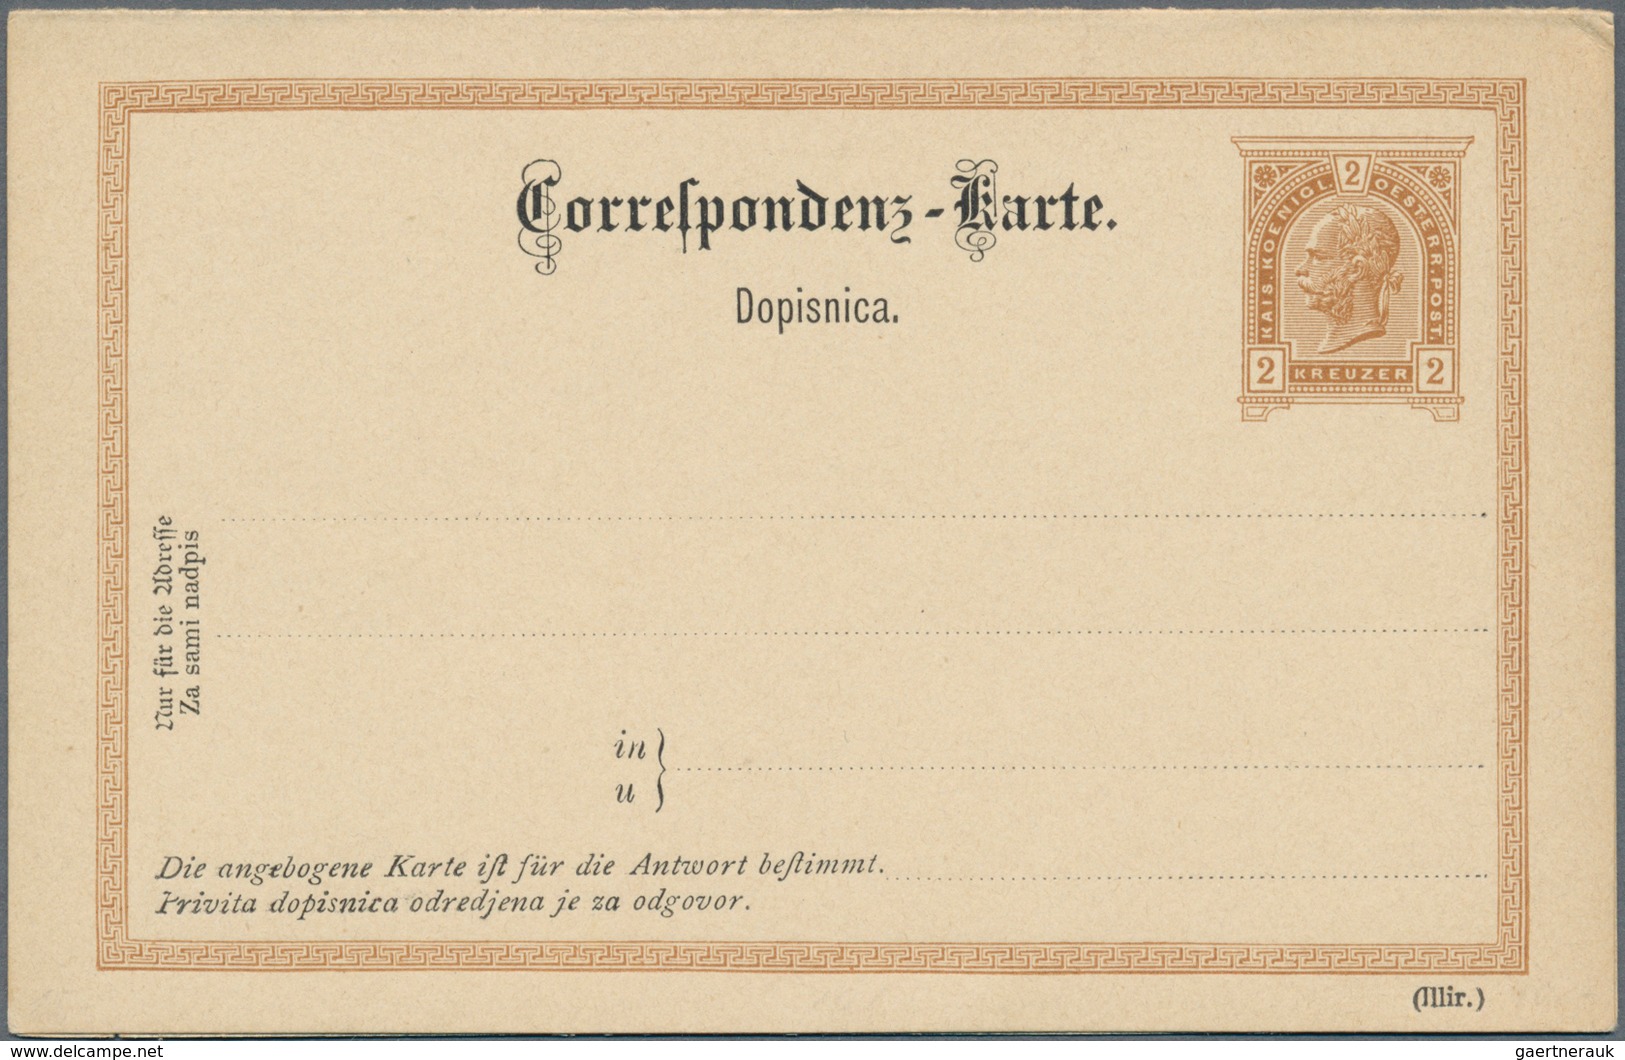 Österreich - Ganzsachen: 1883/1897, reichhaltige Sammlung mit ca.370 Ganzsachen-Postkarten der Kreuz